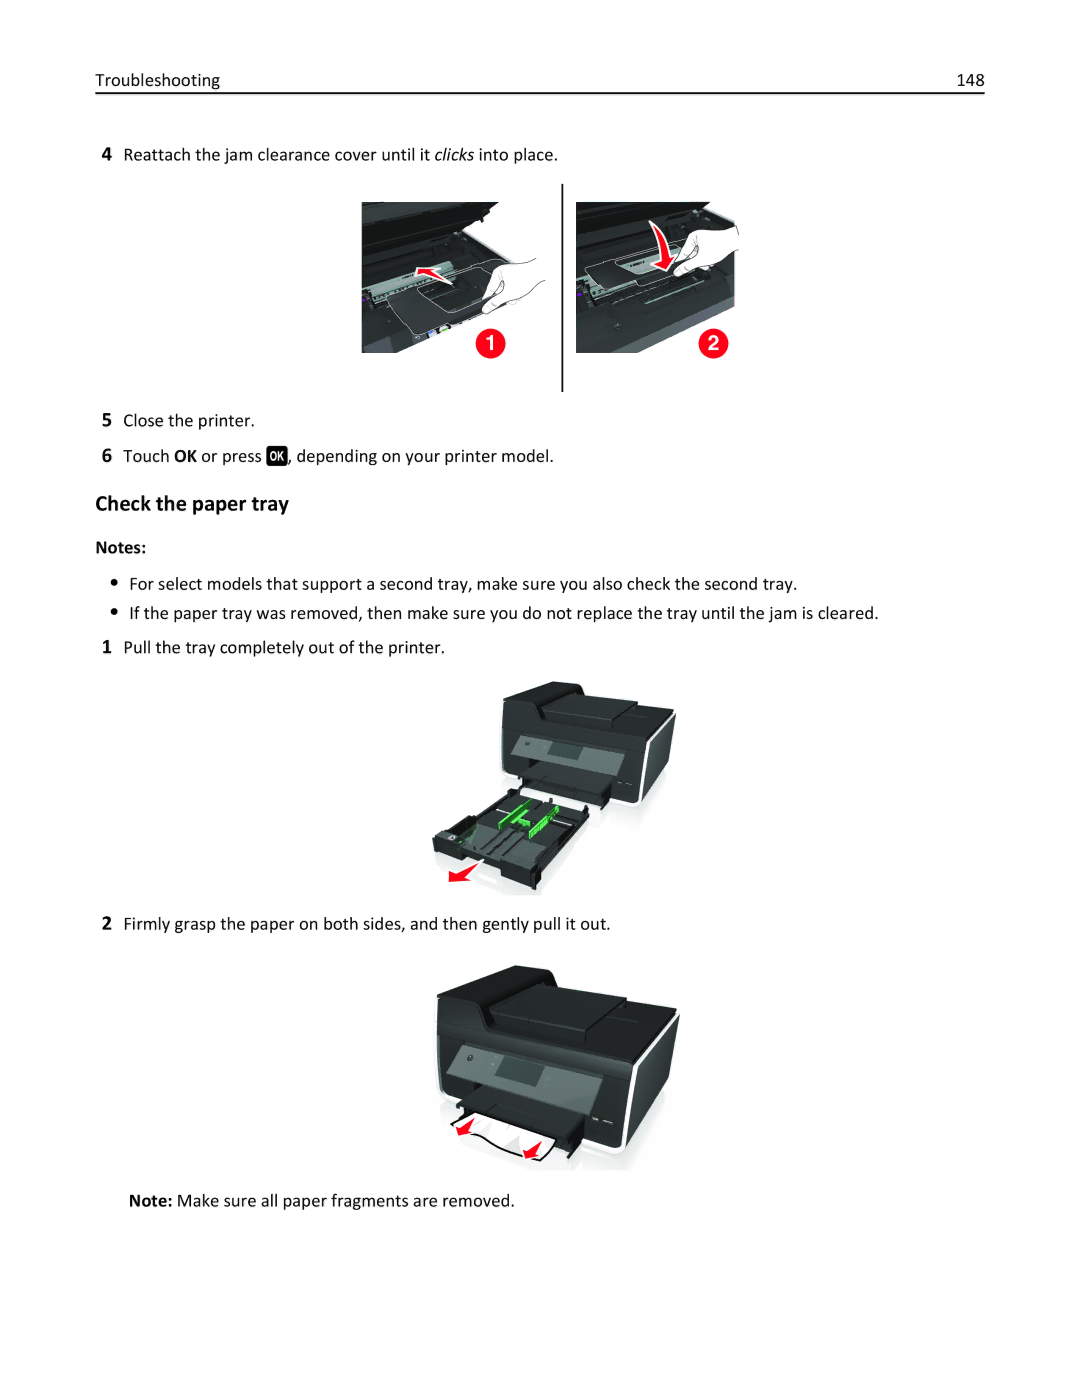 Lexmark 90T9251, 901, 90E, 90T9250, 90T9200, 91E, Pro915 manual Check the paper tray 